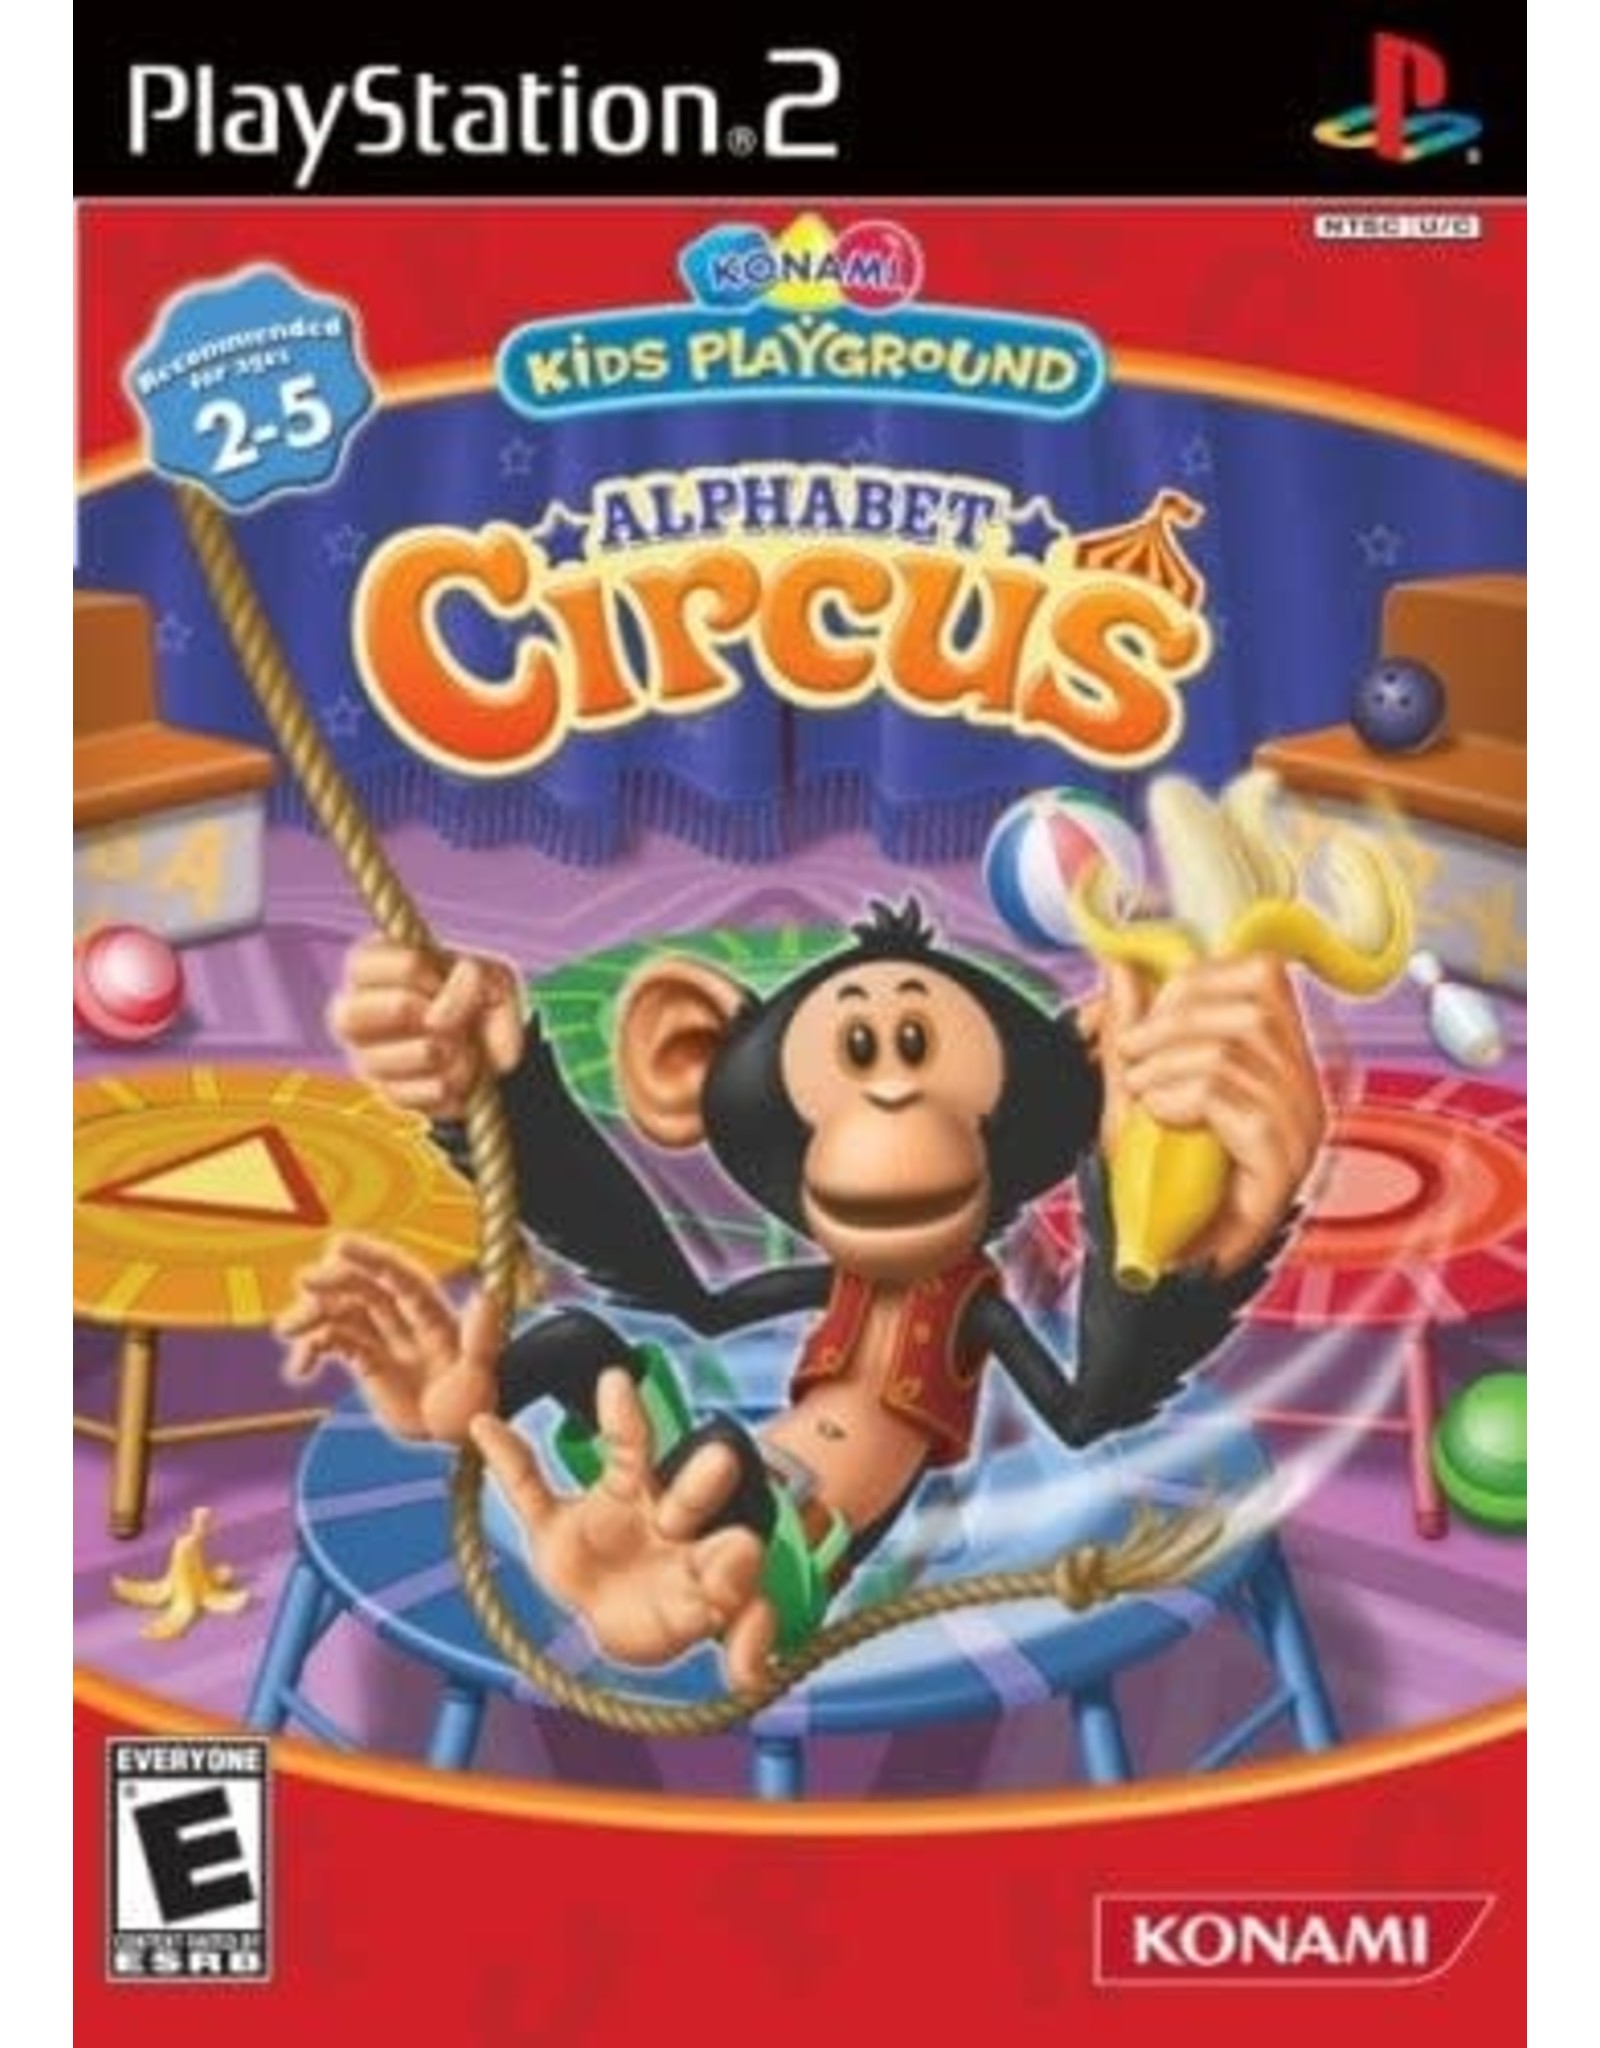 Playstation 2 Konami Kids Playground: Alphabet Circus (CiB)